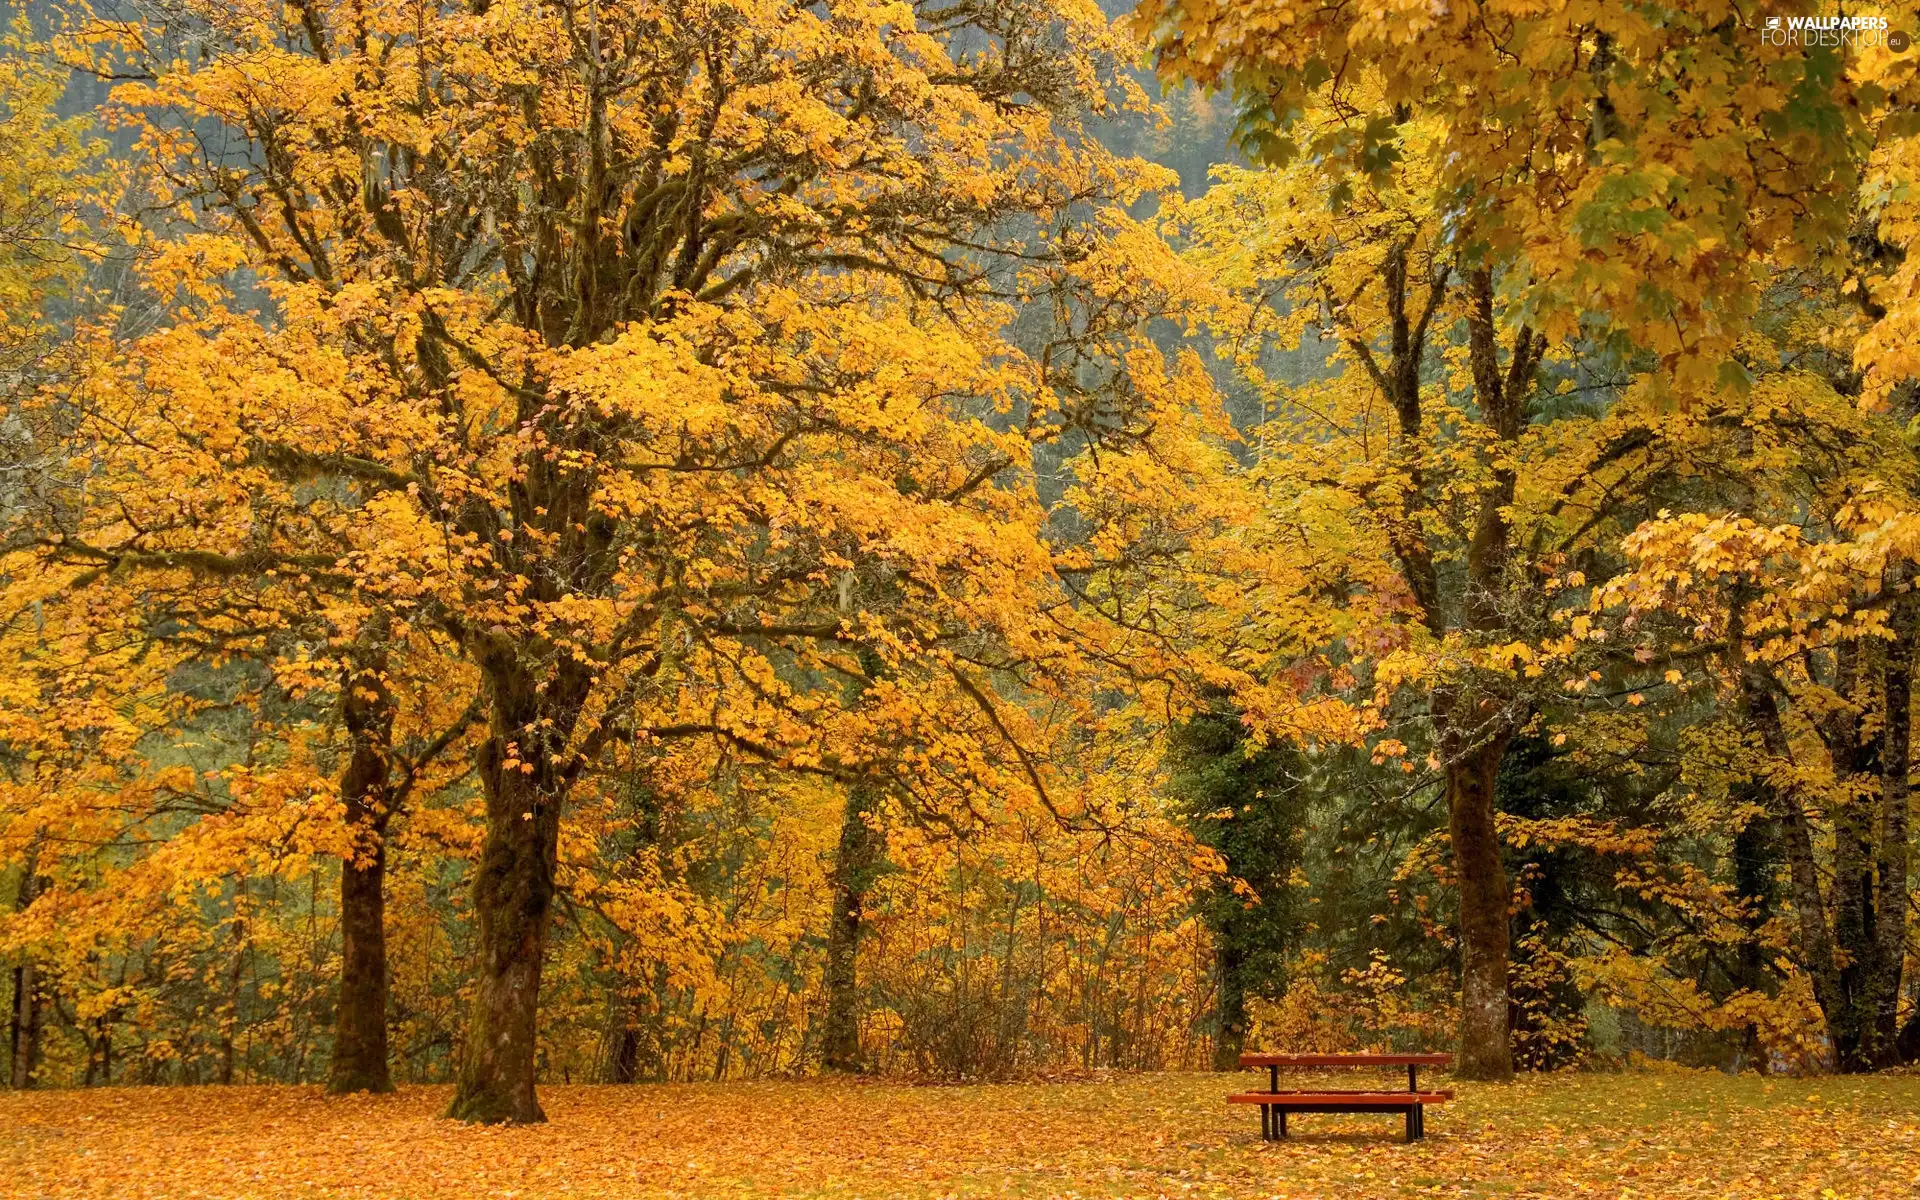 Bench, Autumn, forest